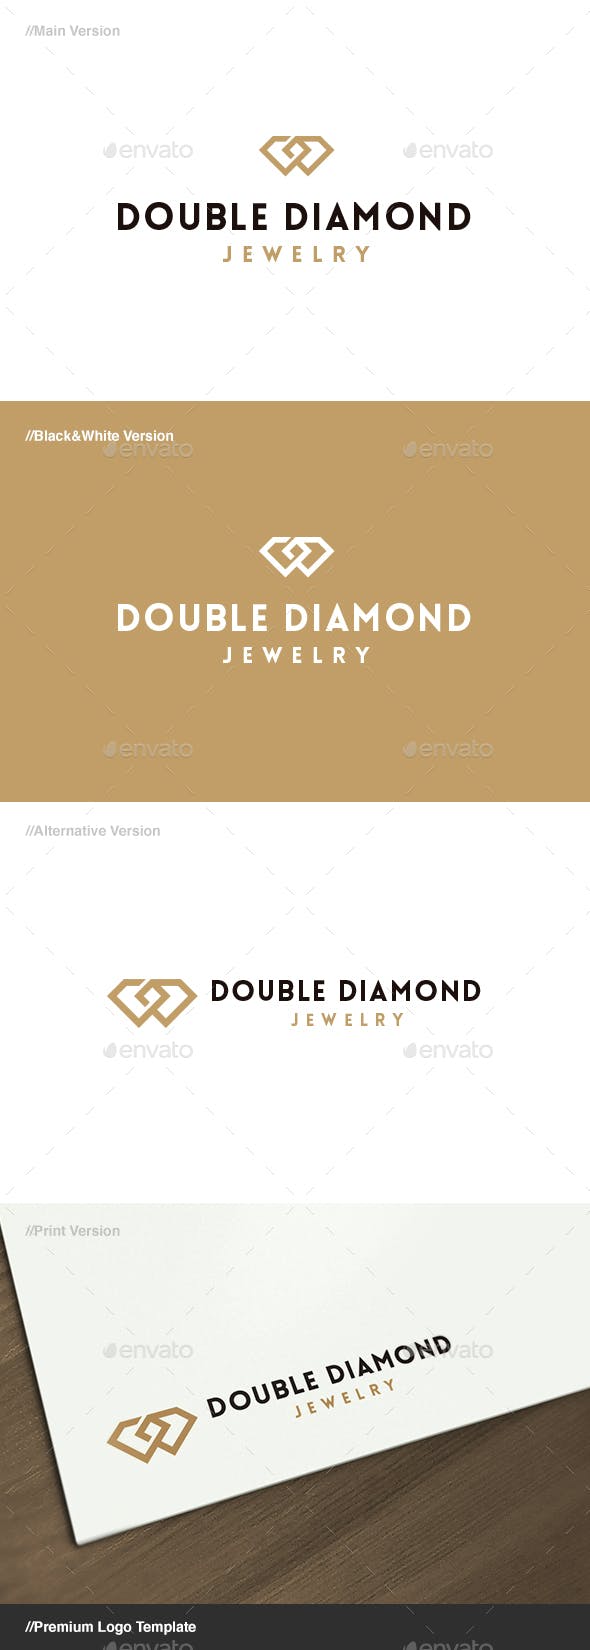 Diamond Jewelry Logo - Double Diamond Jewelry Logo